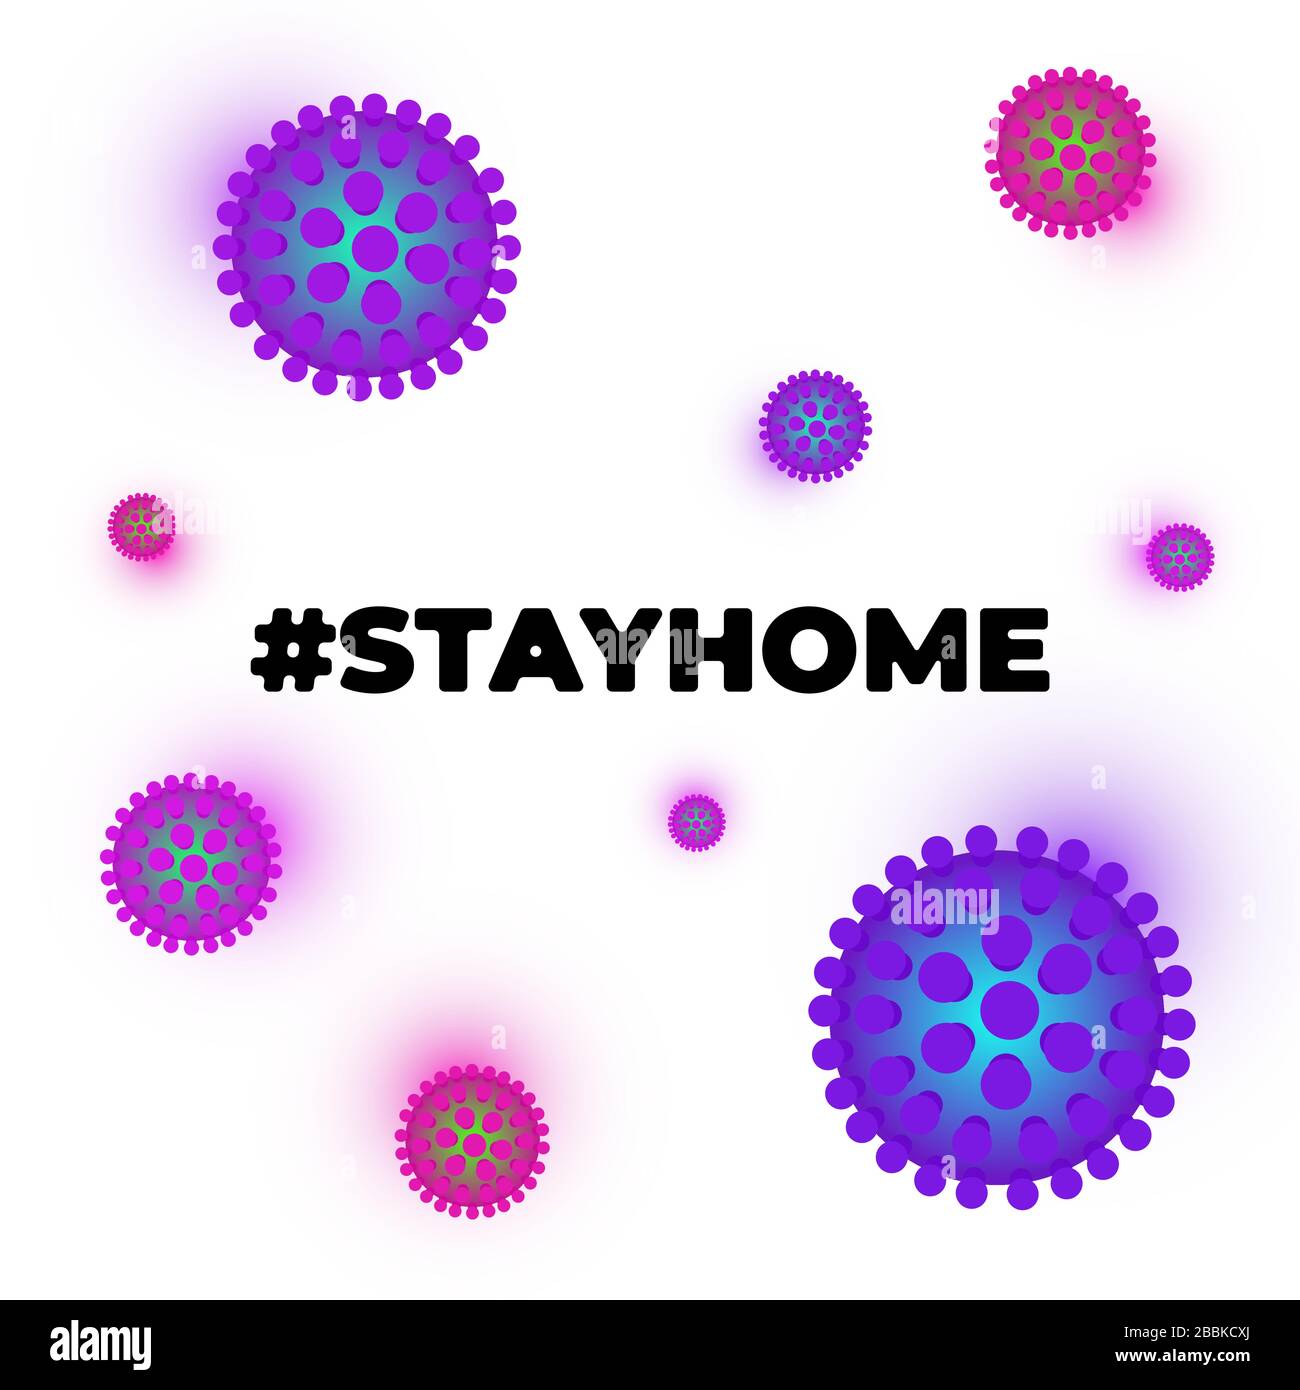 Bleib zu Hause, um die Verbreitung des Coronavirus-Slogans zu verhindern. Hashtag stayhome Infektion Epidemie Schutz Kampagne. Quarantäne-Banner mit Corona-Virus und Hash-Tag-Zitat-Vektordarstellung Stock Vektor